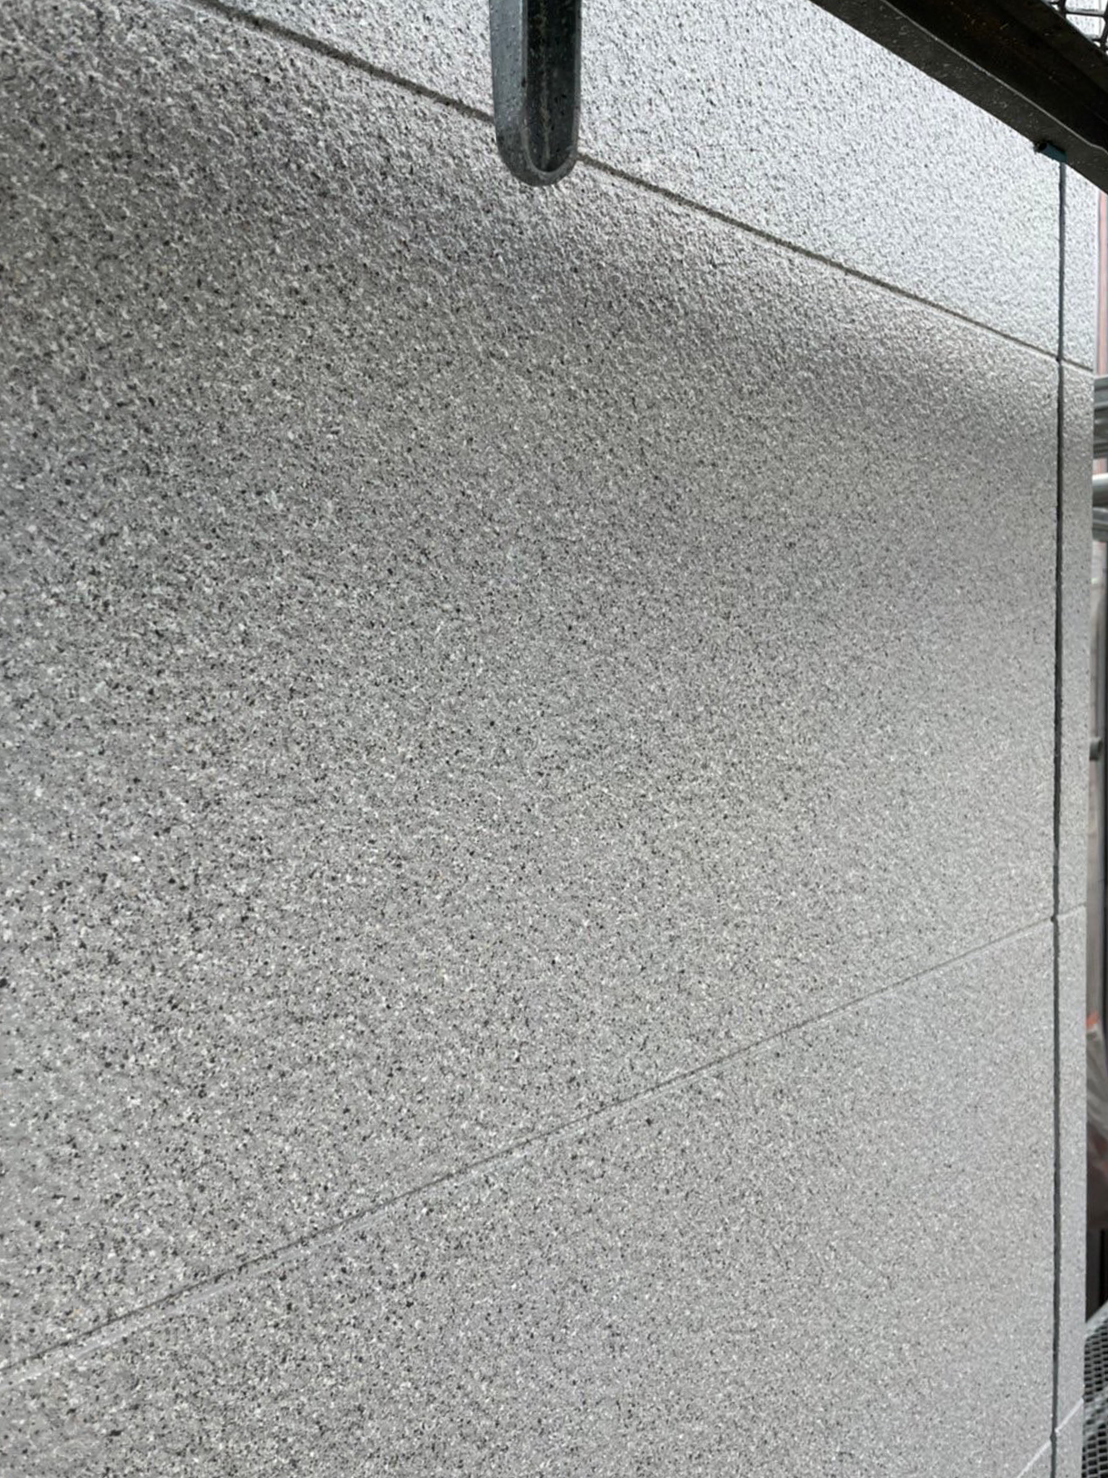 福岡県福岡市中央区 M様邸 外壁グラナートSP面 トップコート吹き付け完了 写真6